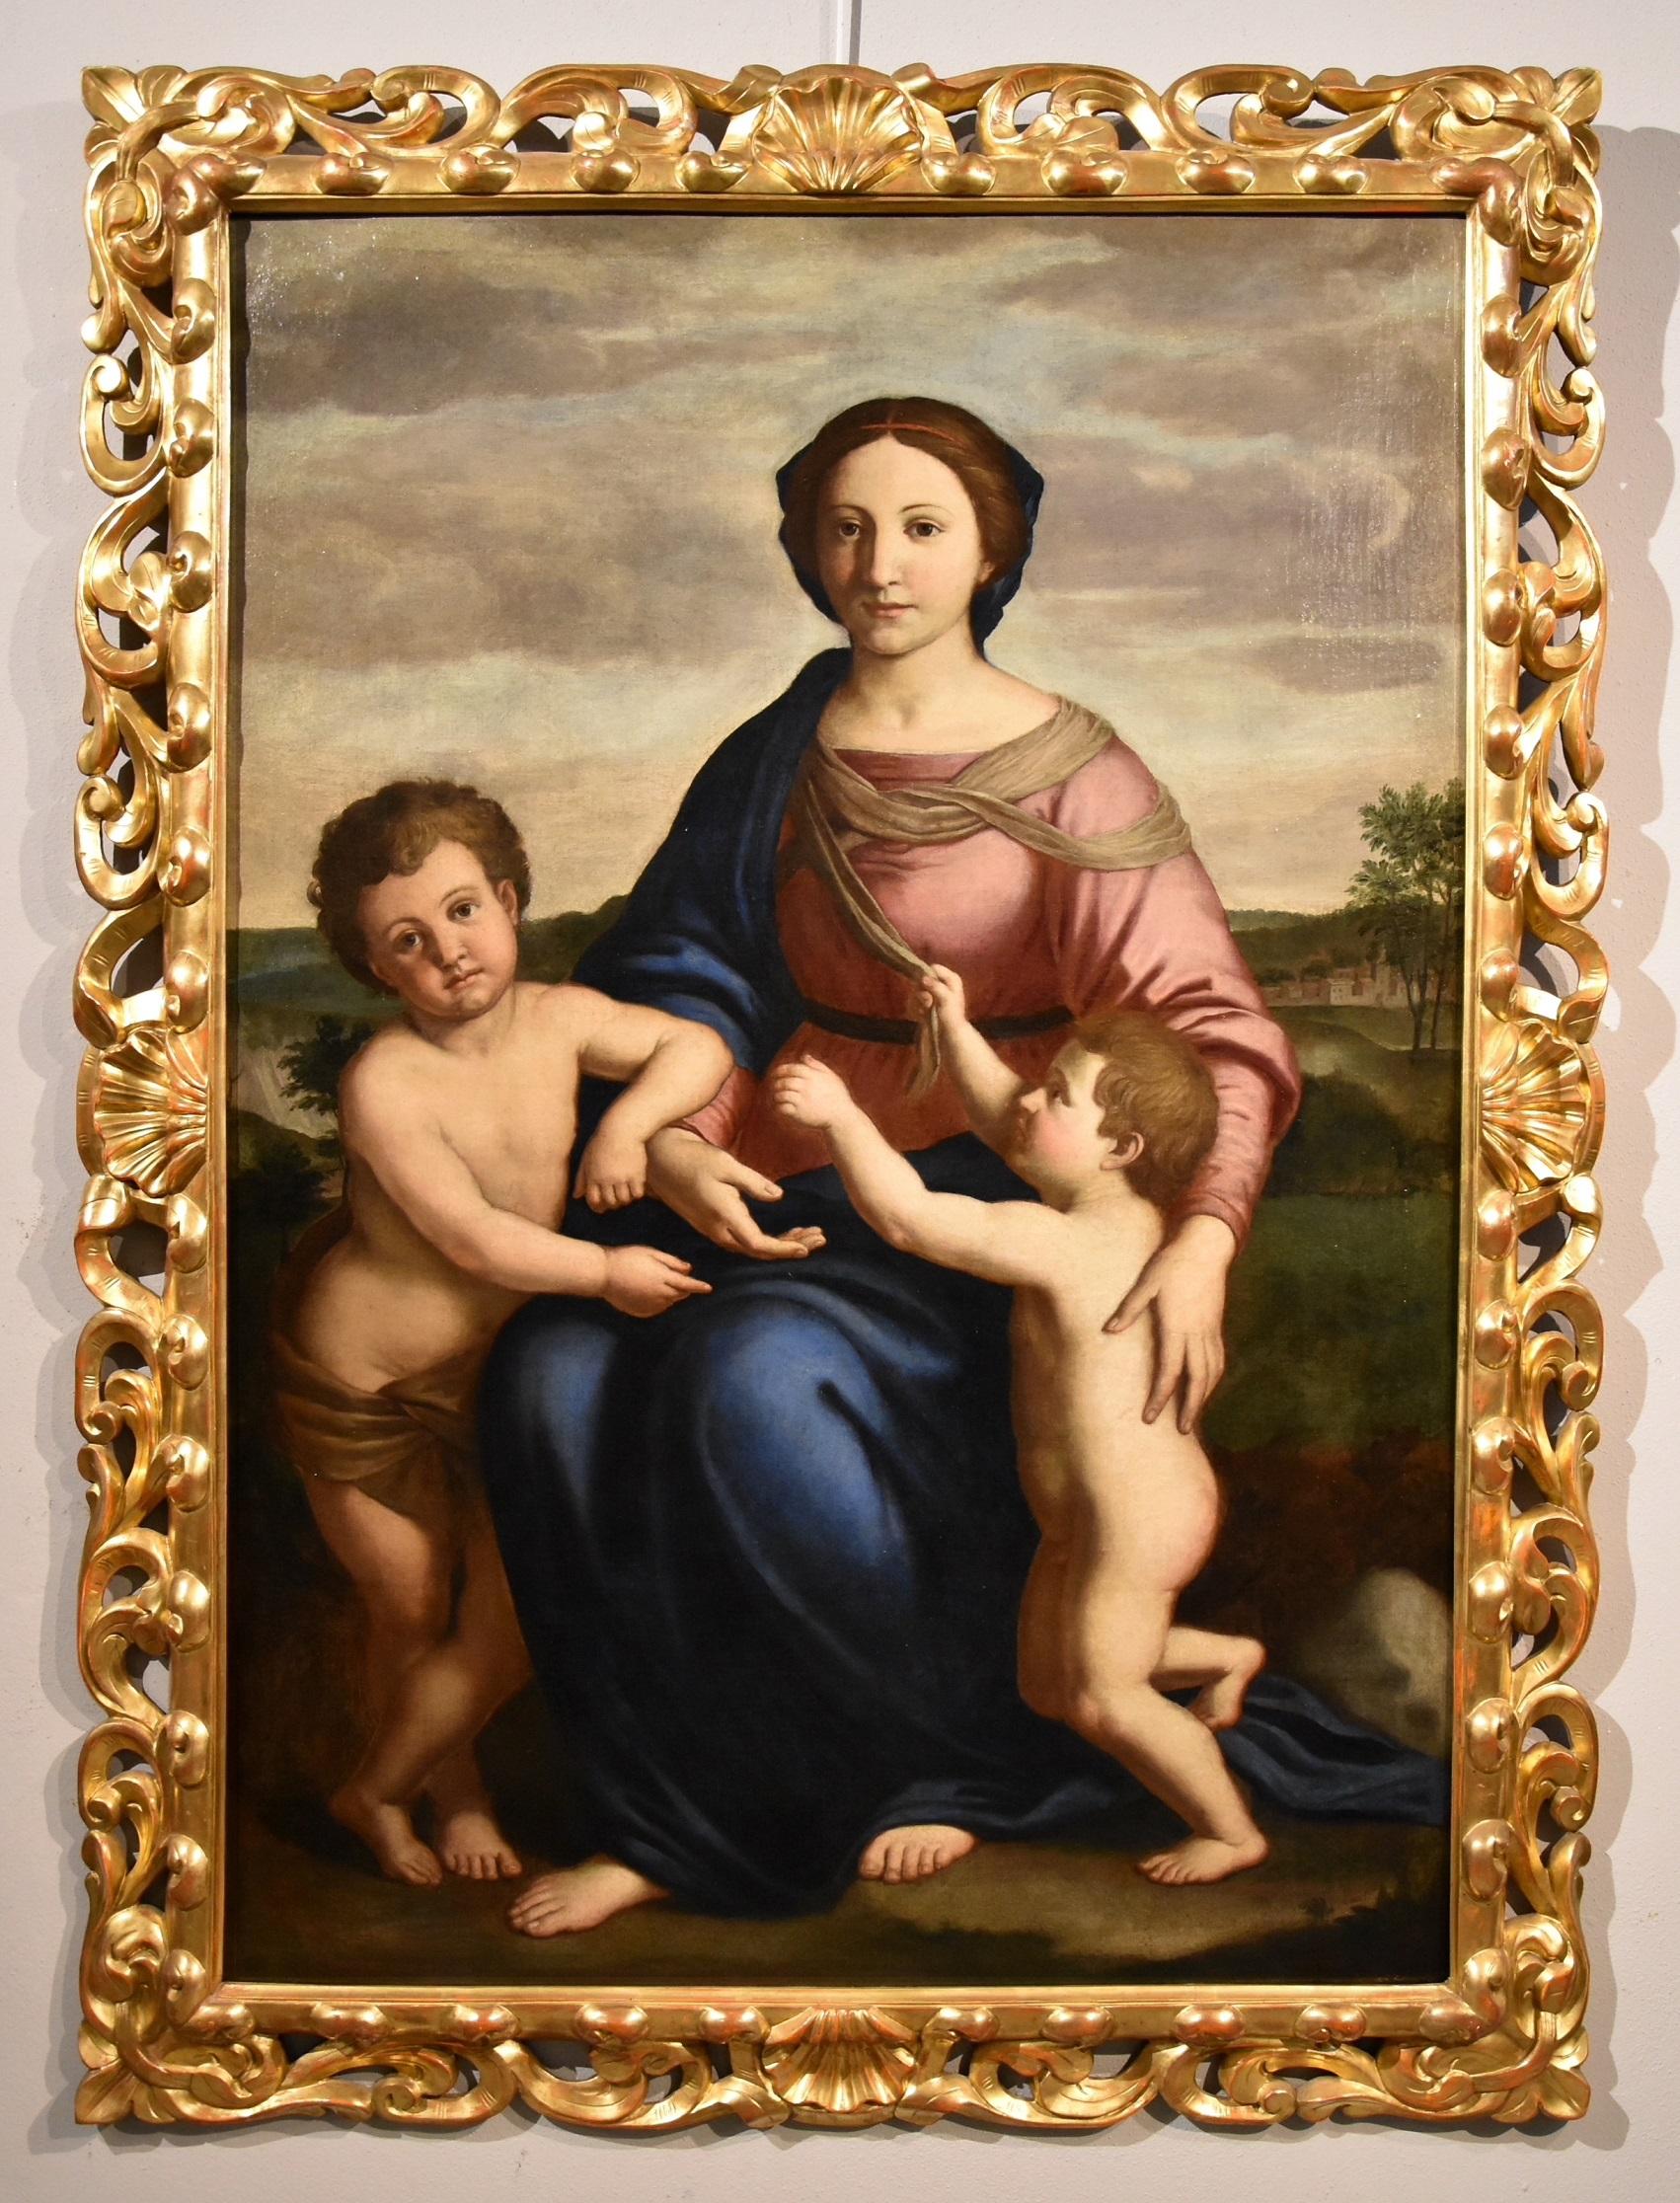 Salvi Virgin Madonna Paint Old master Oil on canvas 17th Century Raffaello Italy - Painting by Giovanni Battista Salvi, known as Sassoferrato